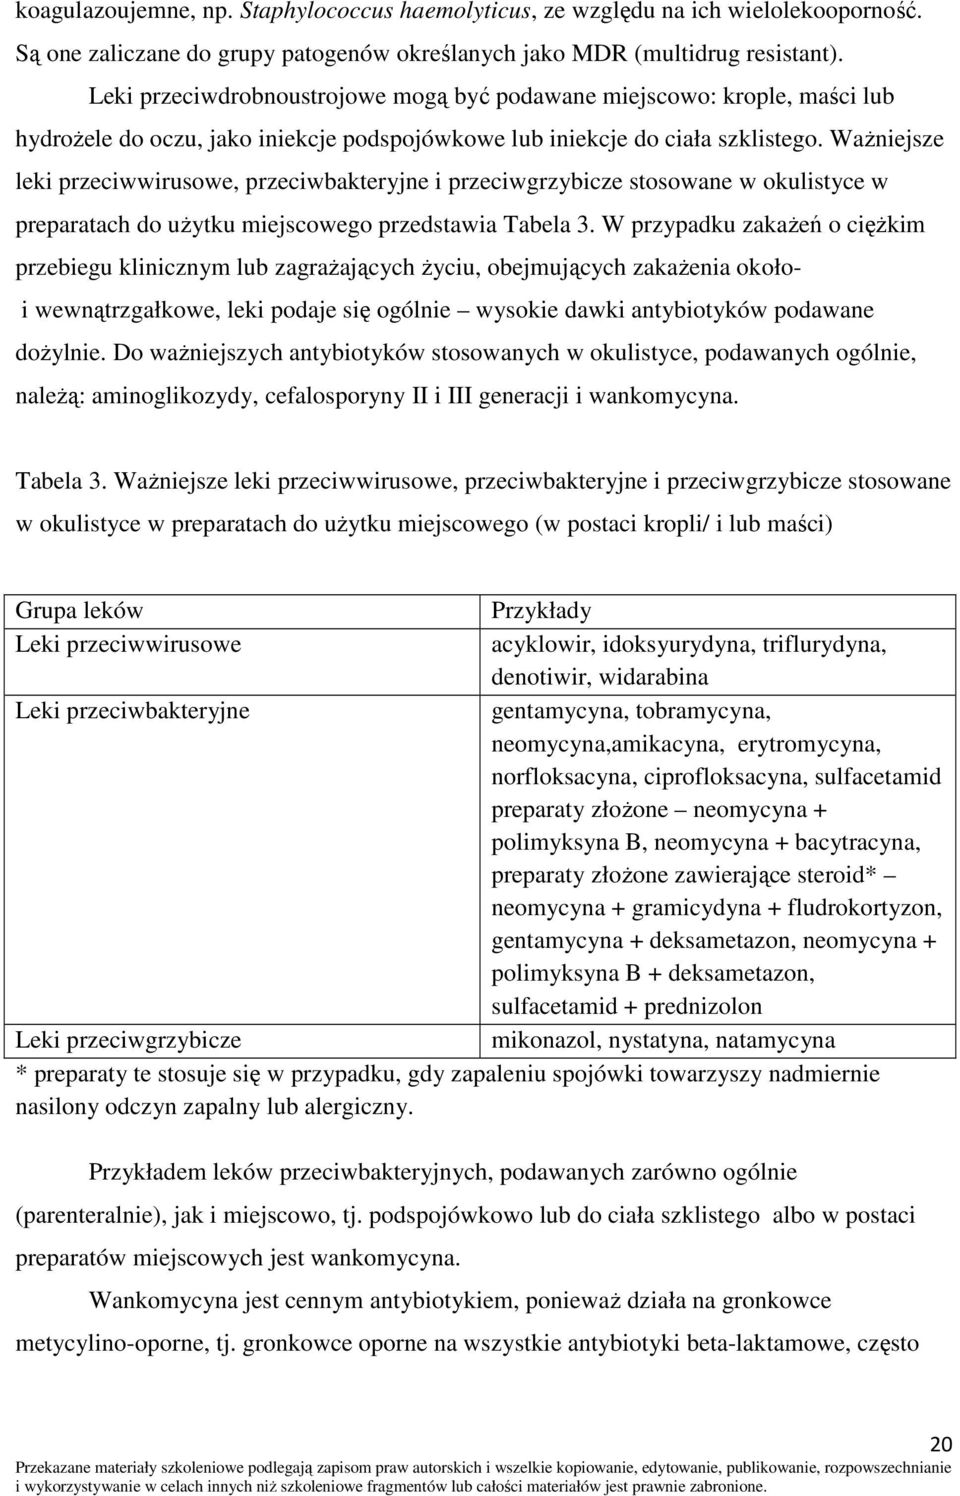 Ważniejsze leki przeciwwirusowe, przeciwbakteryjne i przeciwgrzybicze stosowane w okulistyce w preparatach do użytku miejscowego przedstawia Tabela 3.